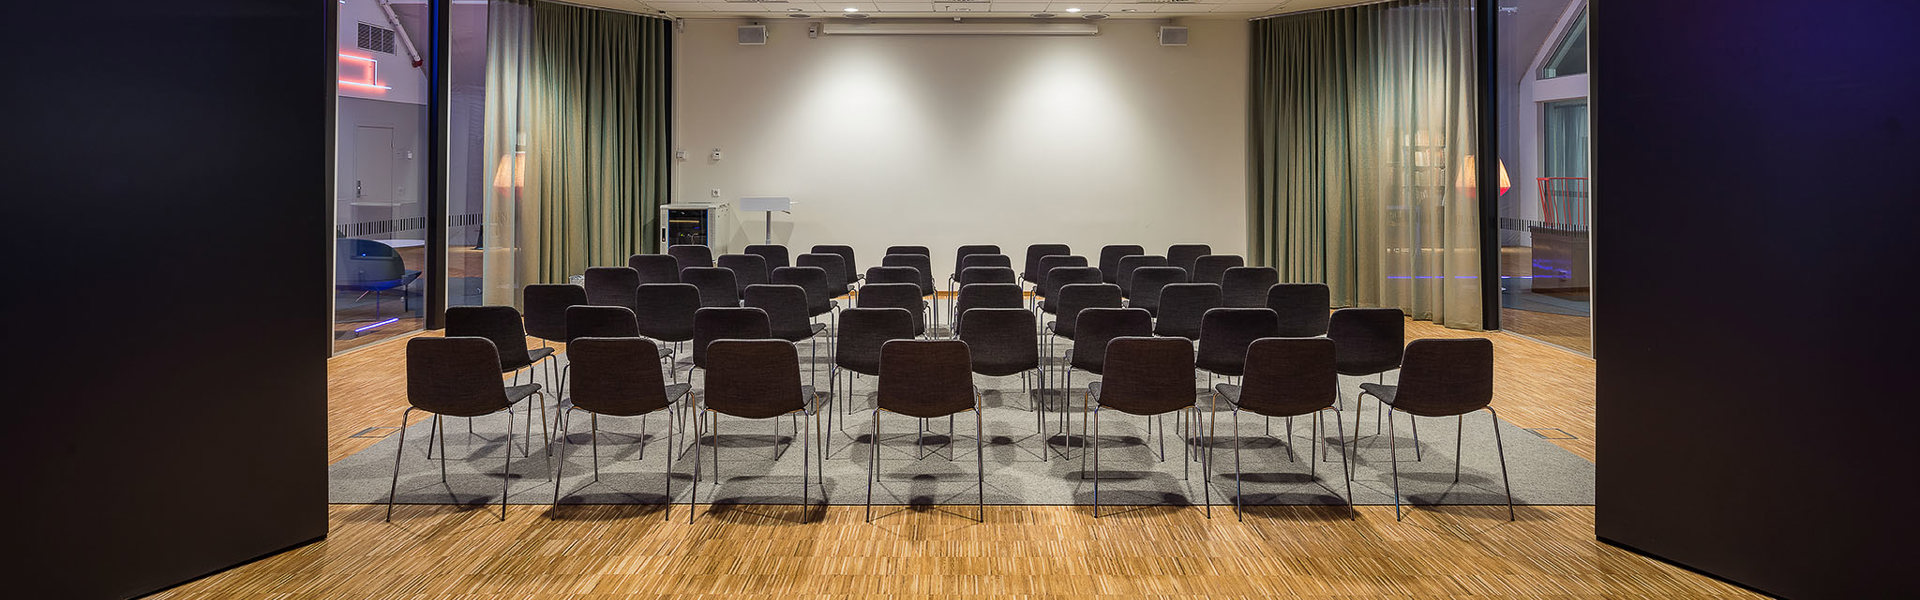 Foto av föreläsningssal med uppställda stolar på Stadsarkivet Liljeholmskajen